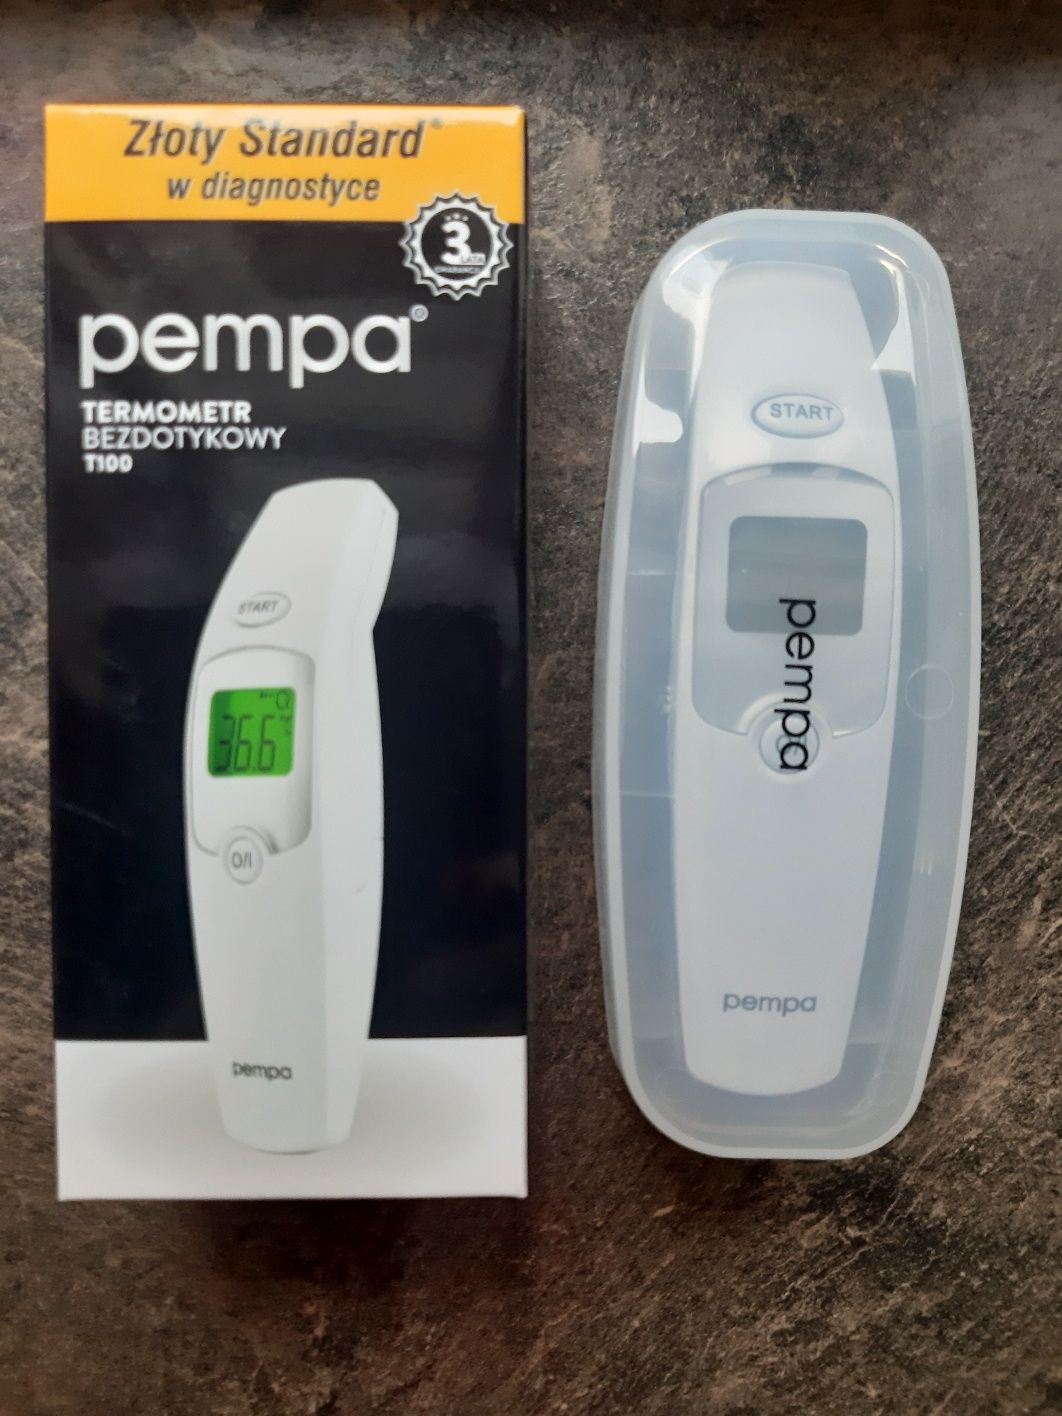 Termometr bezdotykowy Pempa T100 nowy, na gwarancji